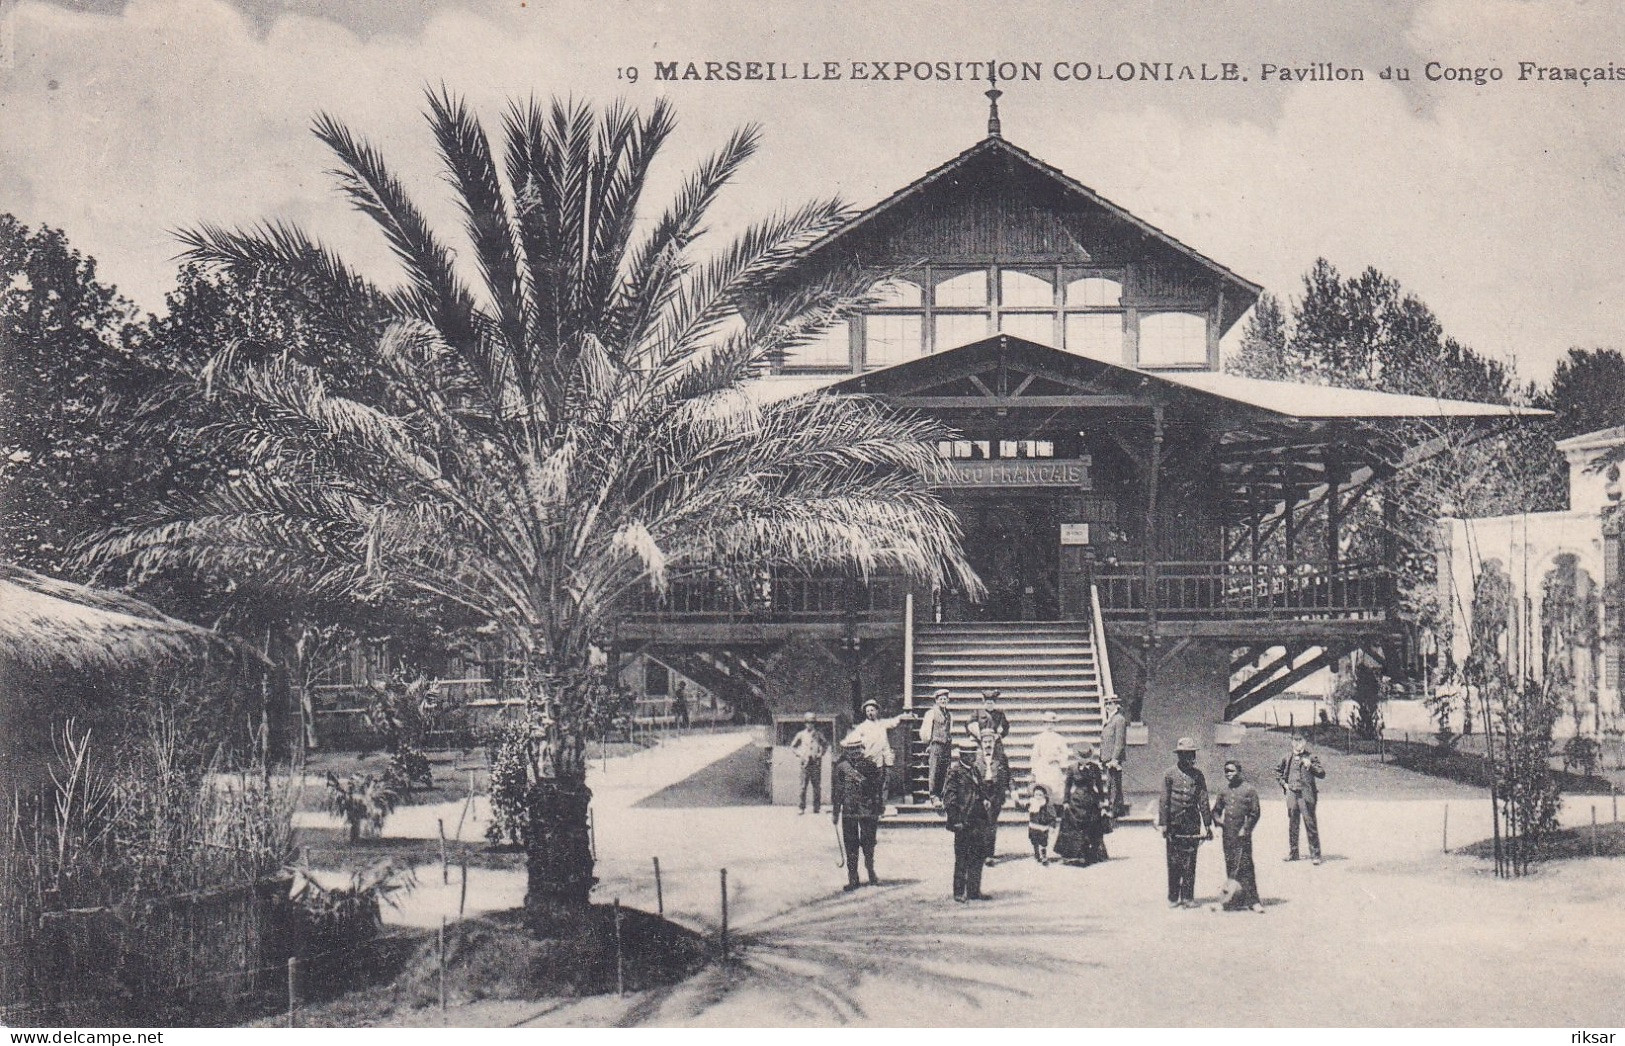 MARSEILLE(EXPOSITION COLONIALE) CONGO - Colonial Exhibitions 1906 - 1922